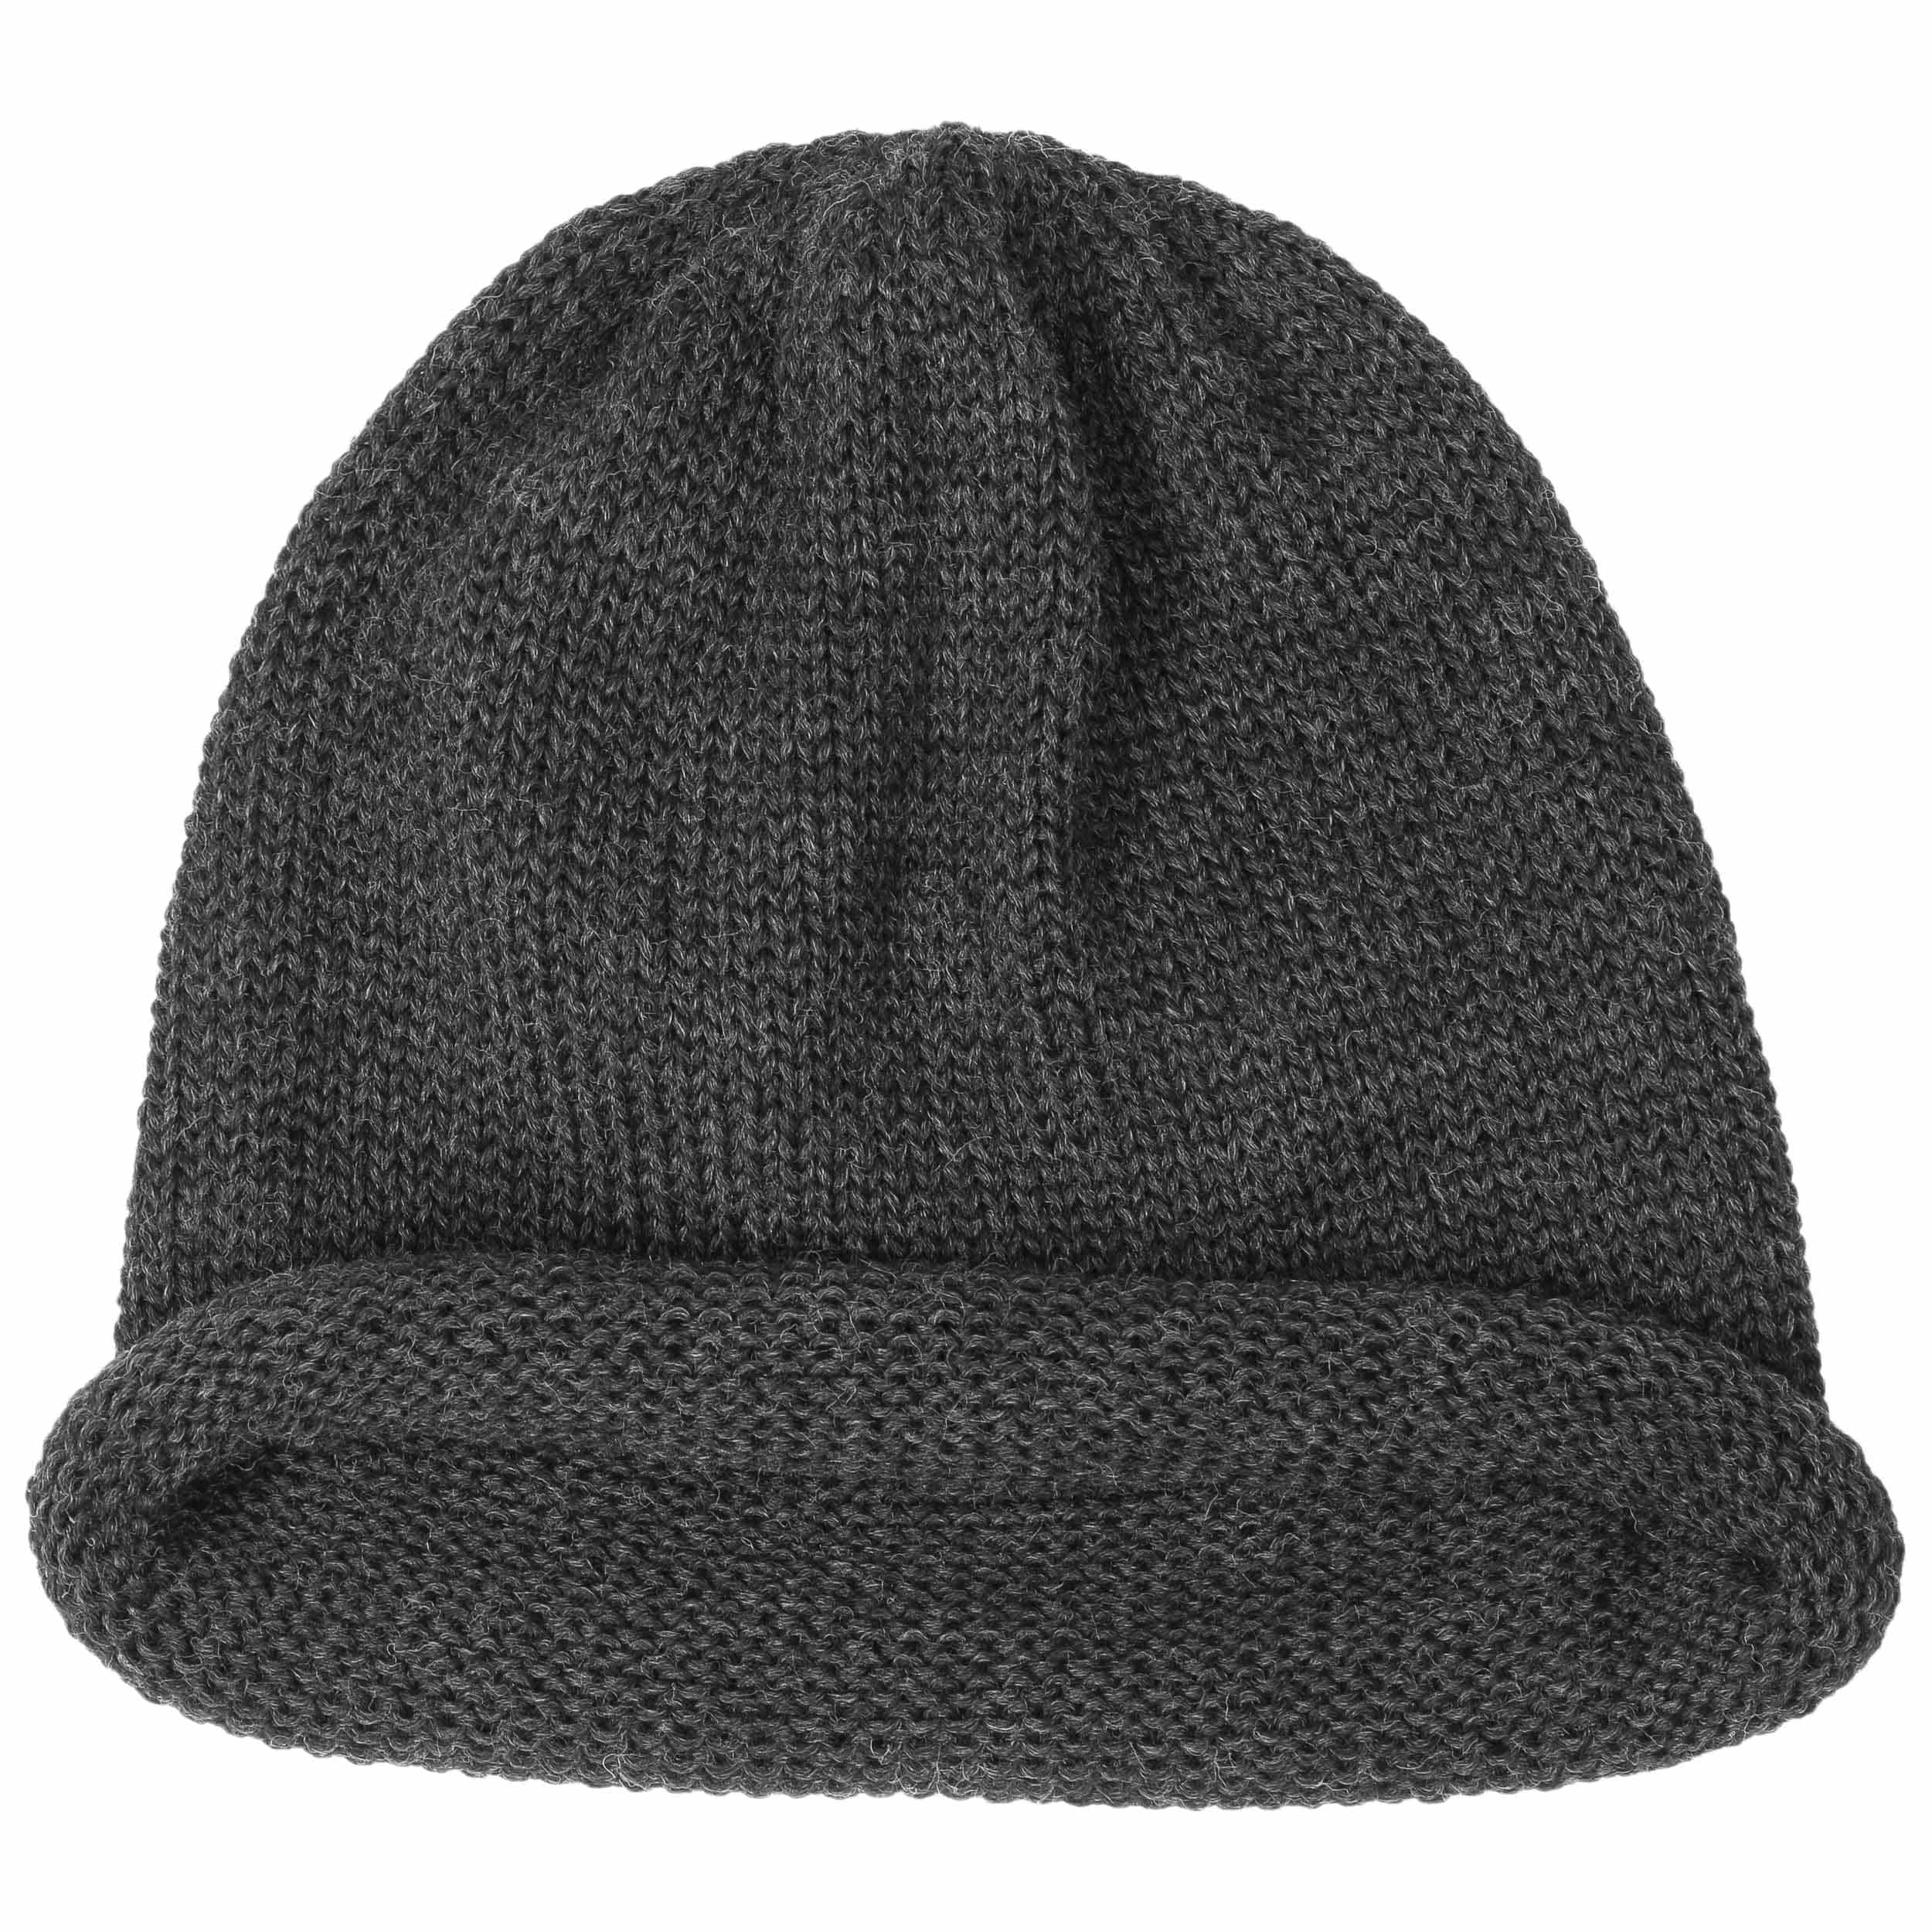 Rolled Edge Knit Hat by Lierys - 32,95